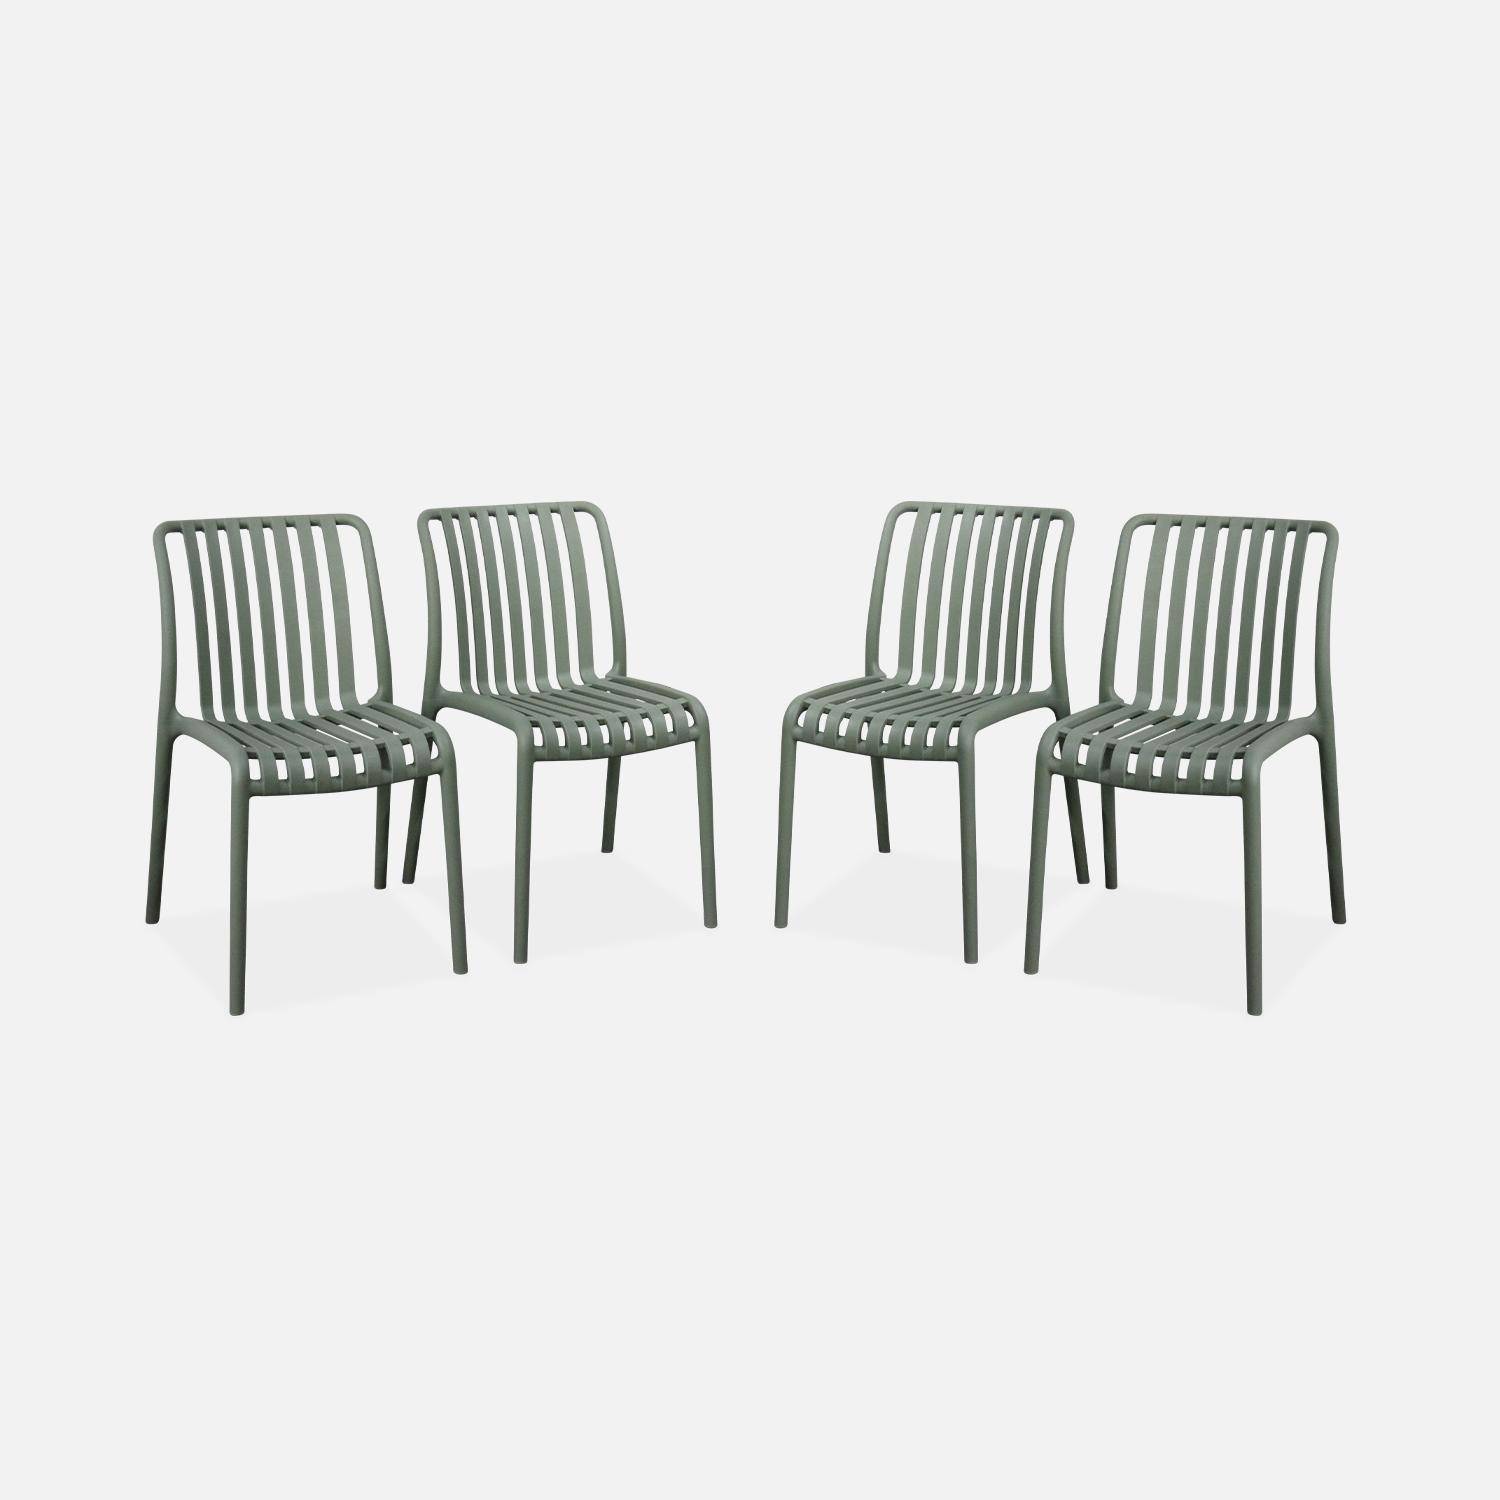 Lot de 4 chaises de jardin en plastique vert de gris, empilables, déjà montées Photo1